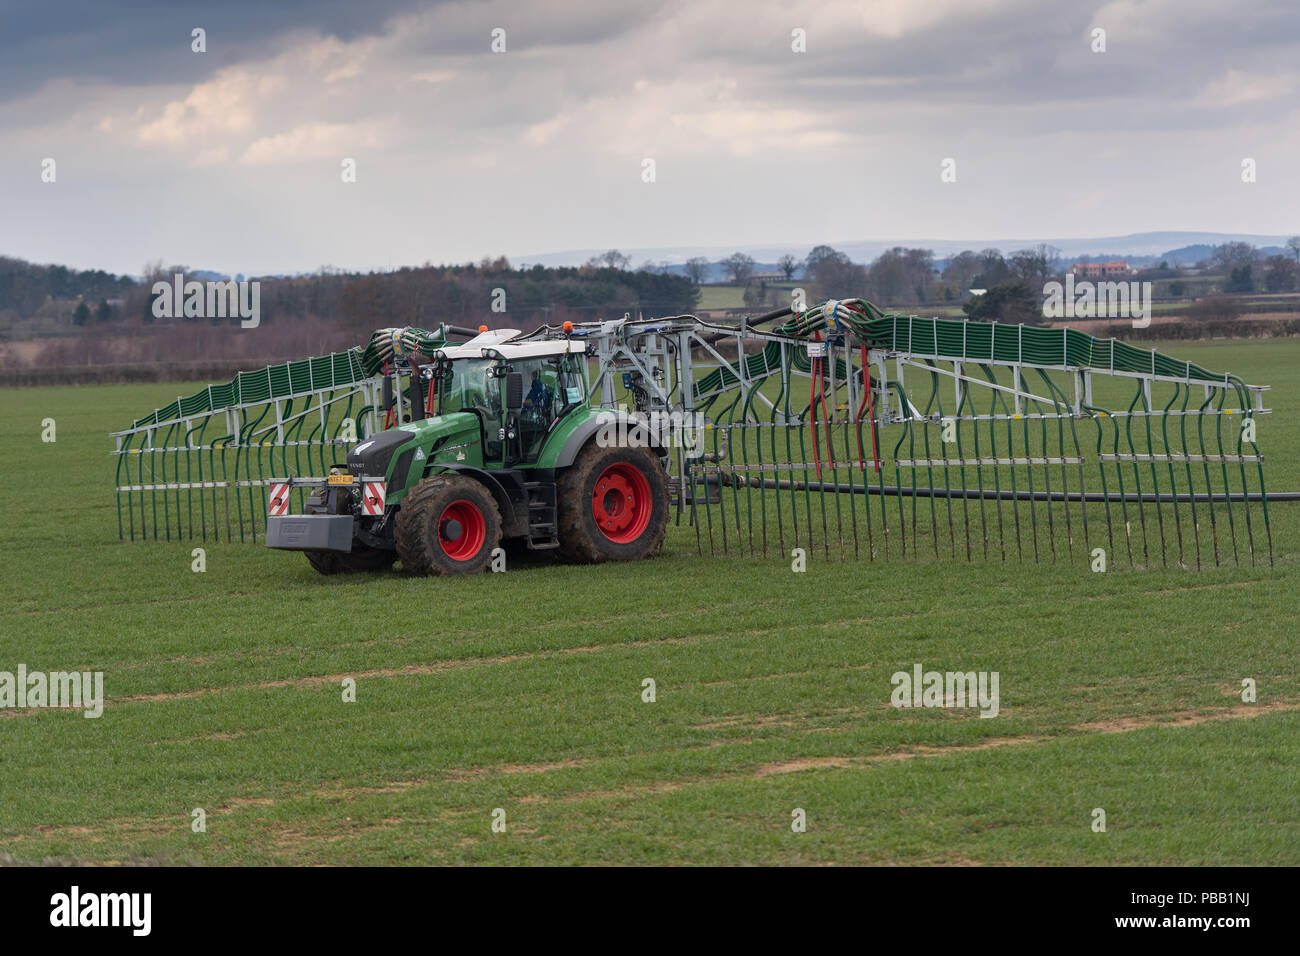 Ausbringung von Gülle mit einer Nabelschnur System auf einem Fendt 828 Traktor, Bodenverdichtung zu minimieren. North Yorkshire, UK. Stockfoto